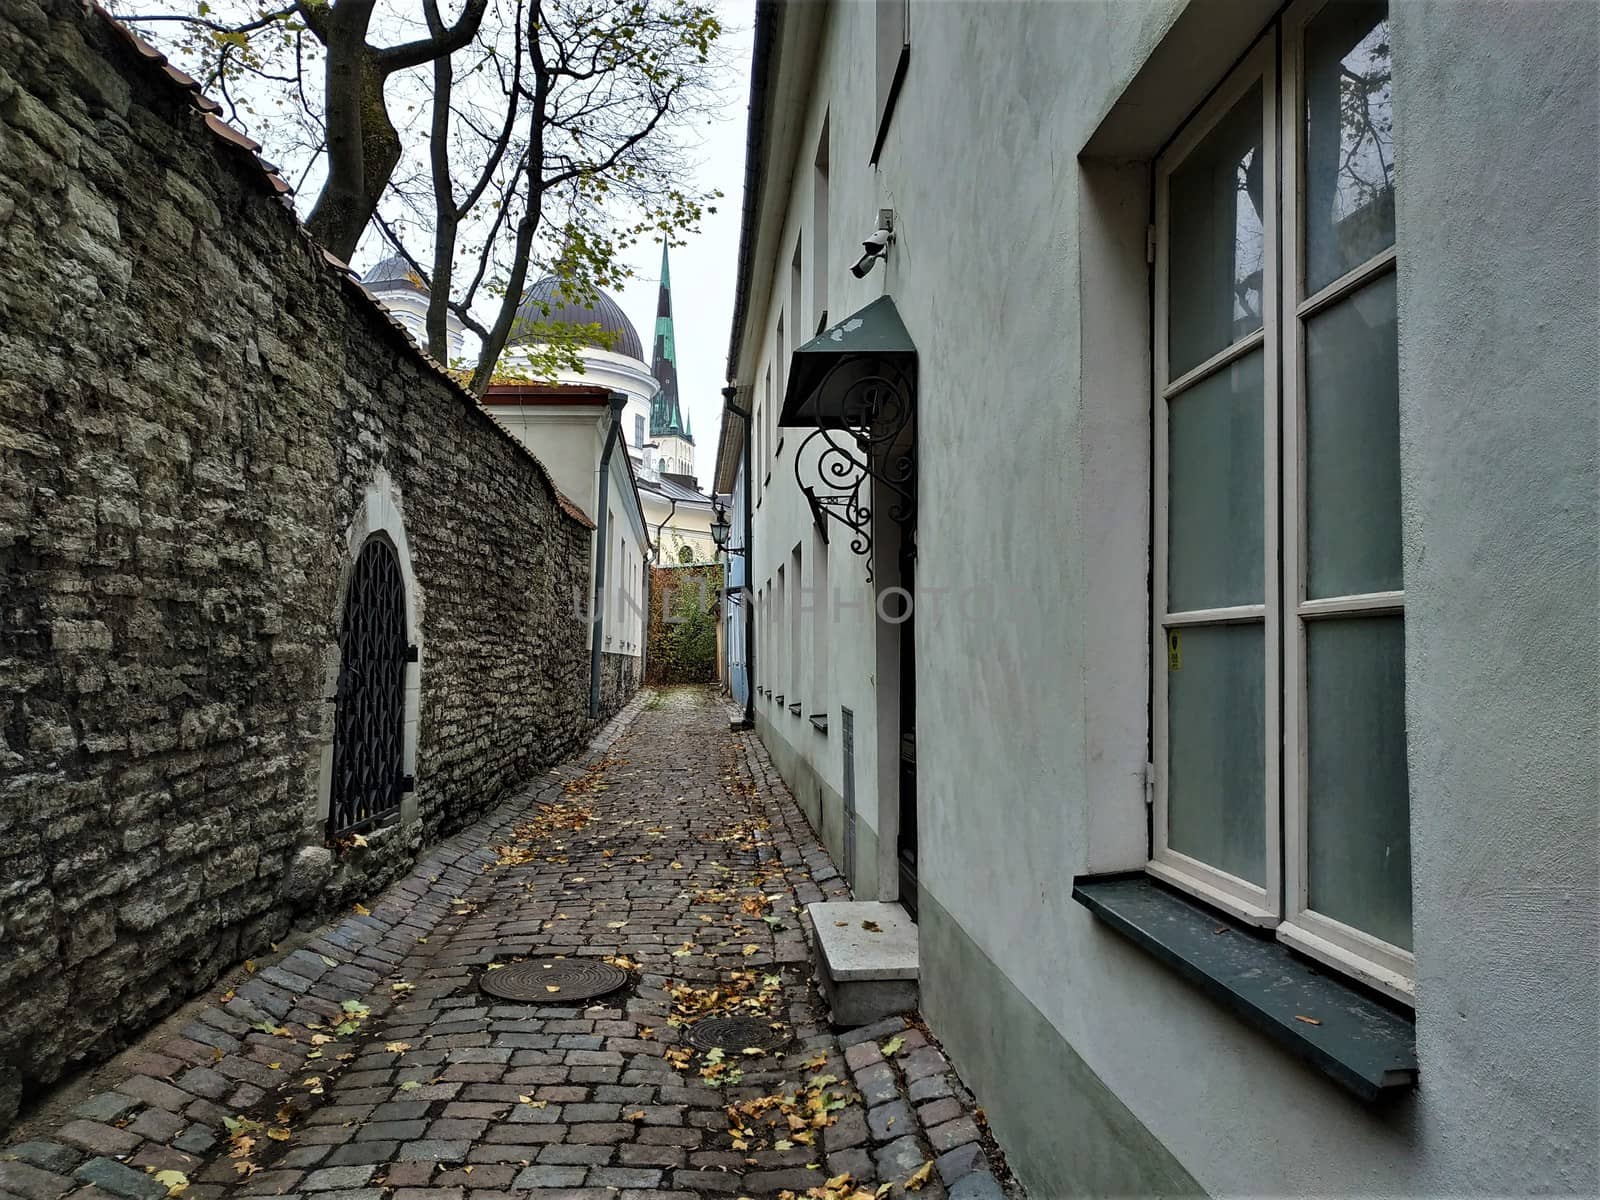 Narrow street near the town wall of Tallinn, Estonia